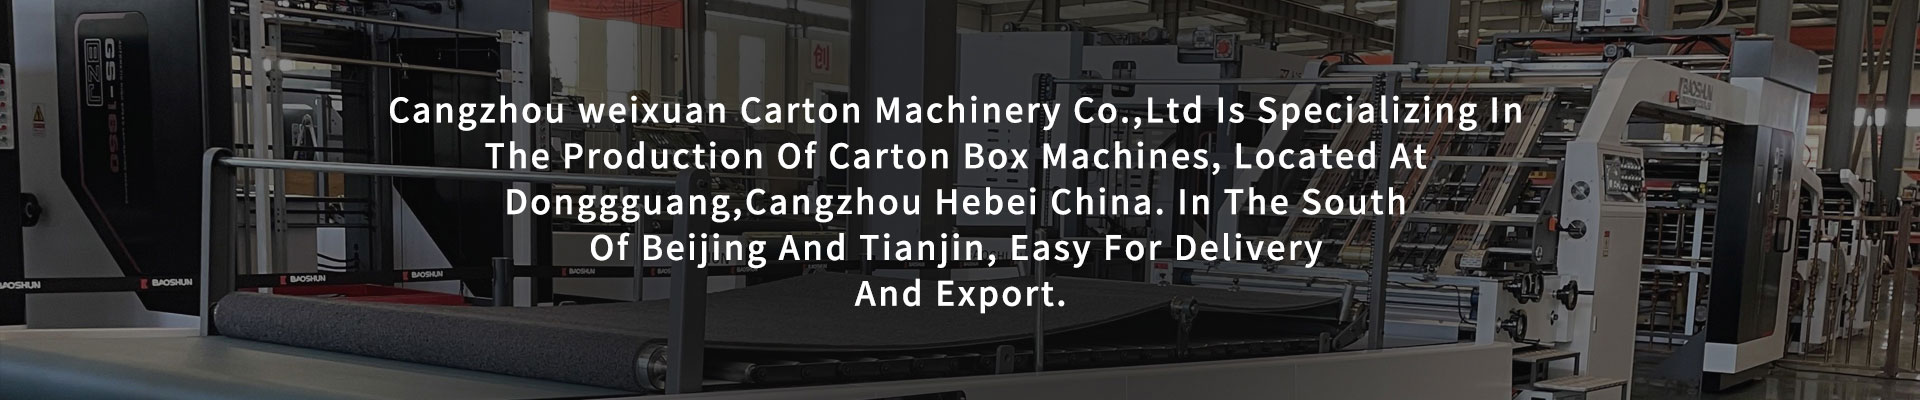 Cangzhou Weixuan Carton Machinery Co.,Ltd